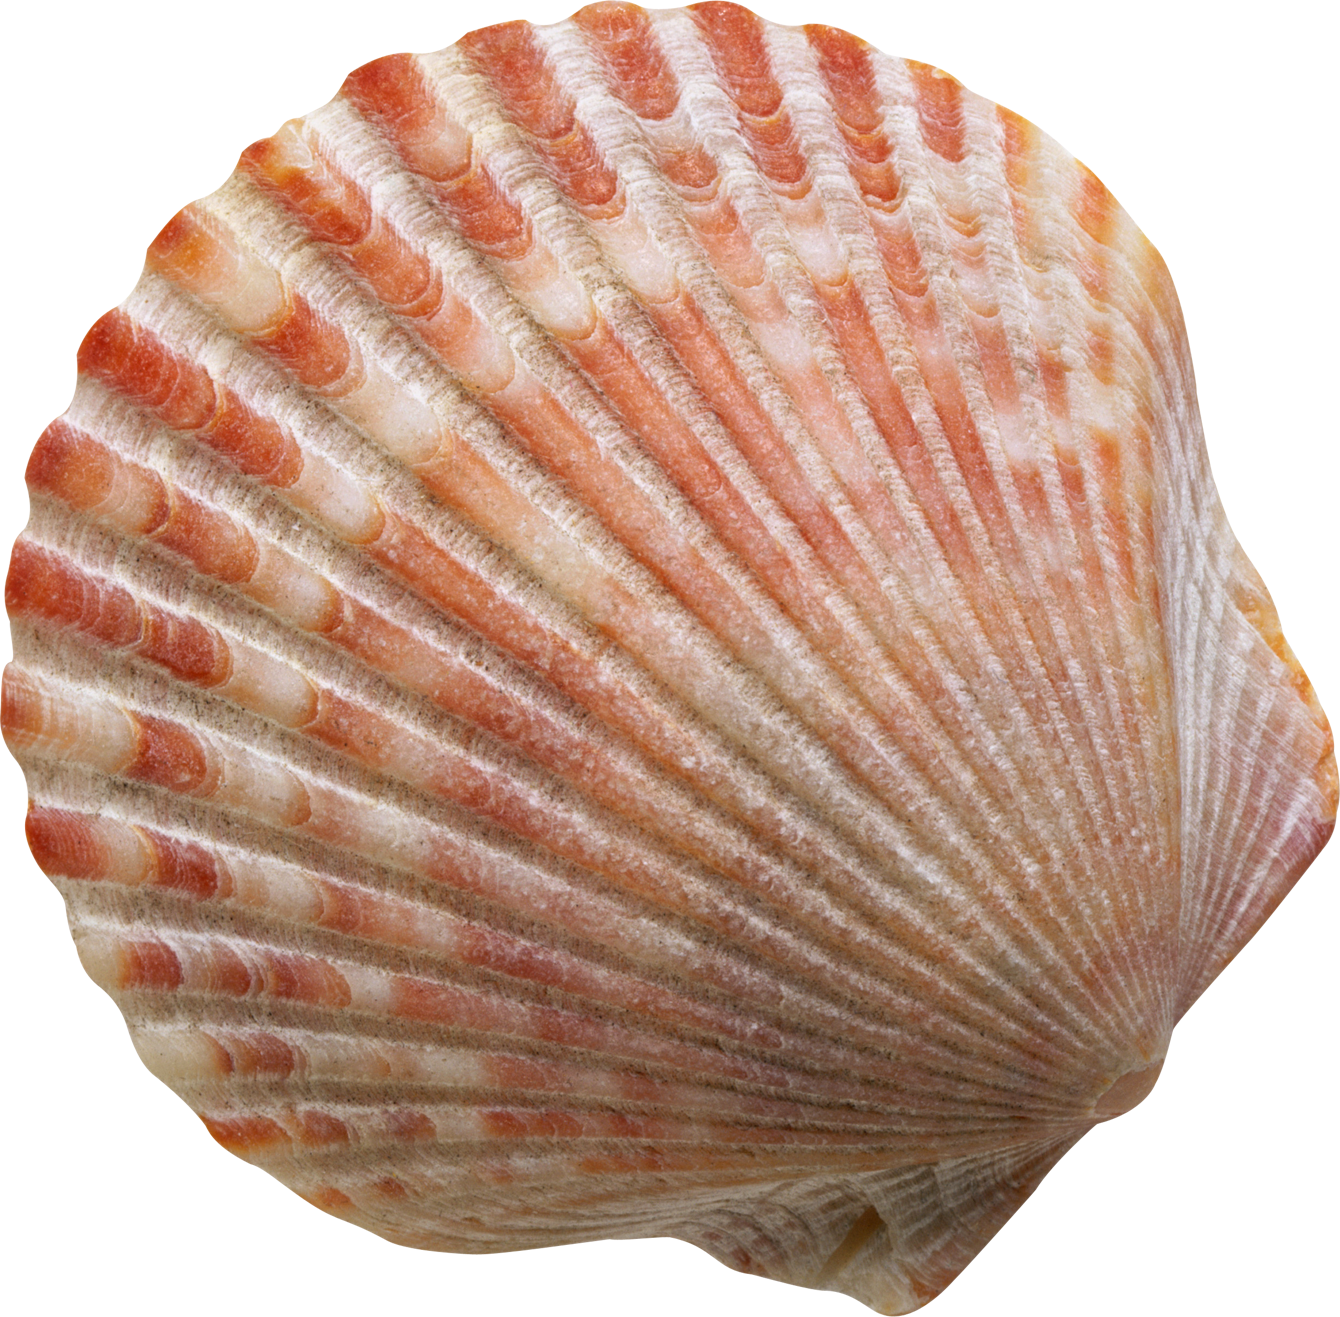 Conch Shell transparente libre PNG